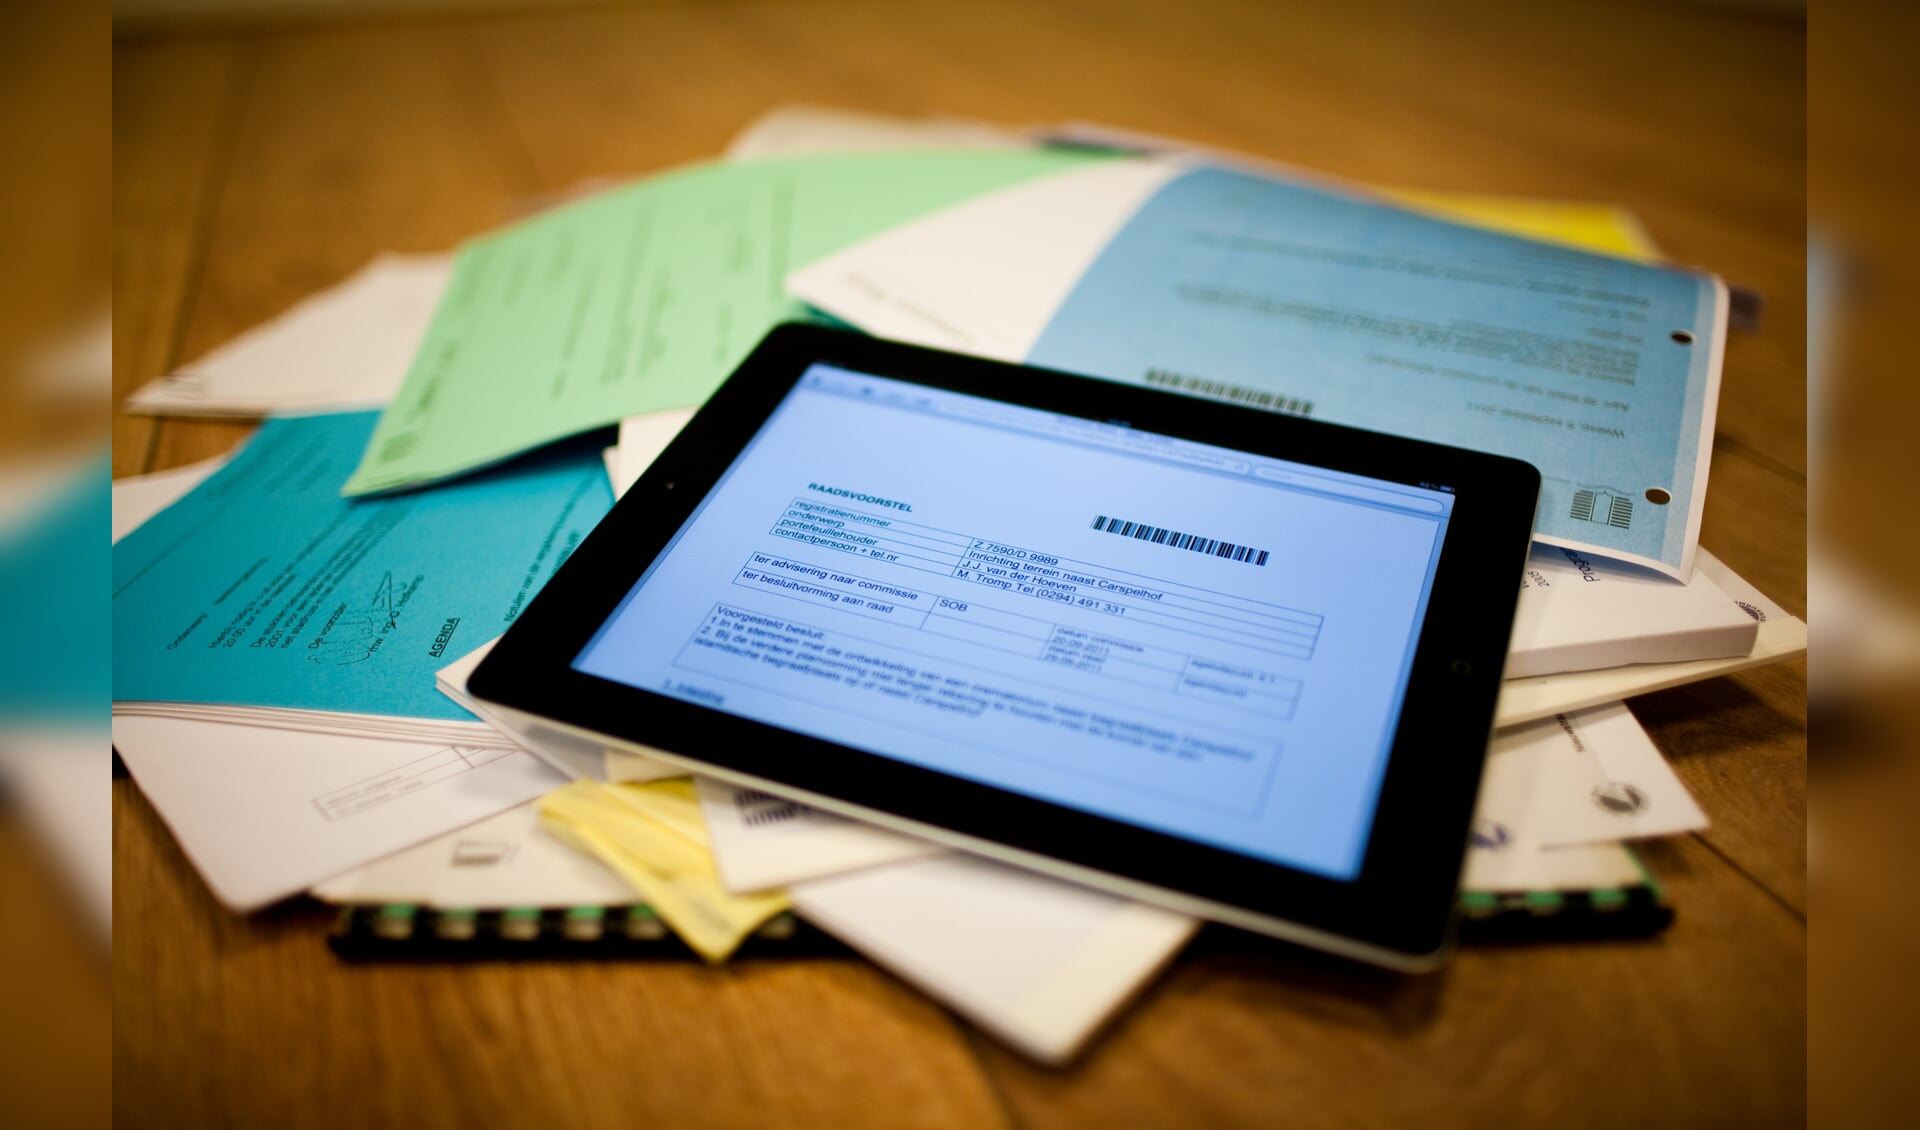 De iPad gaat alle honderden raadsstukken vervangen. De papierstapel past in één pdf.